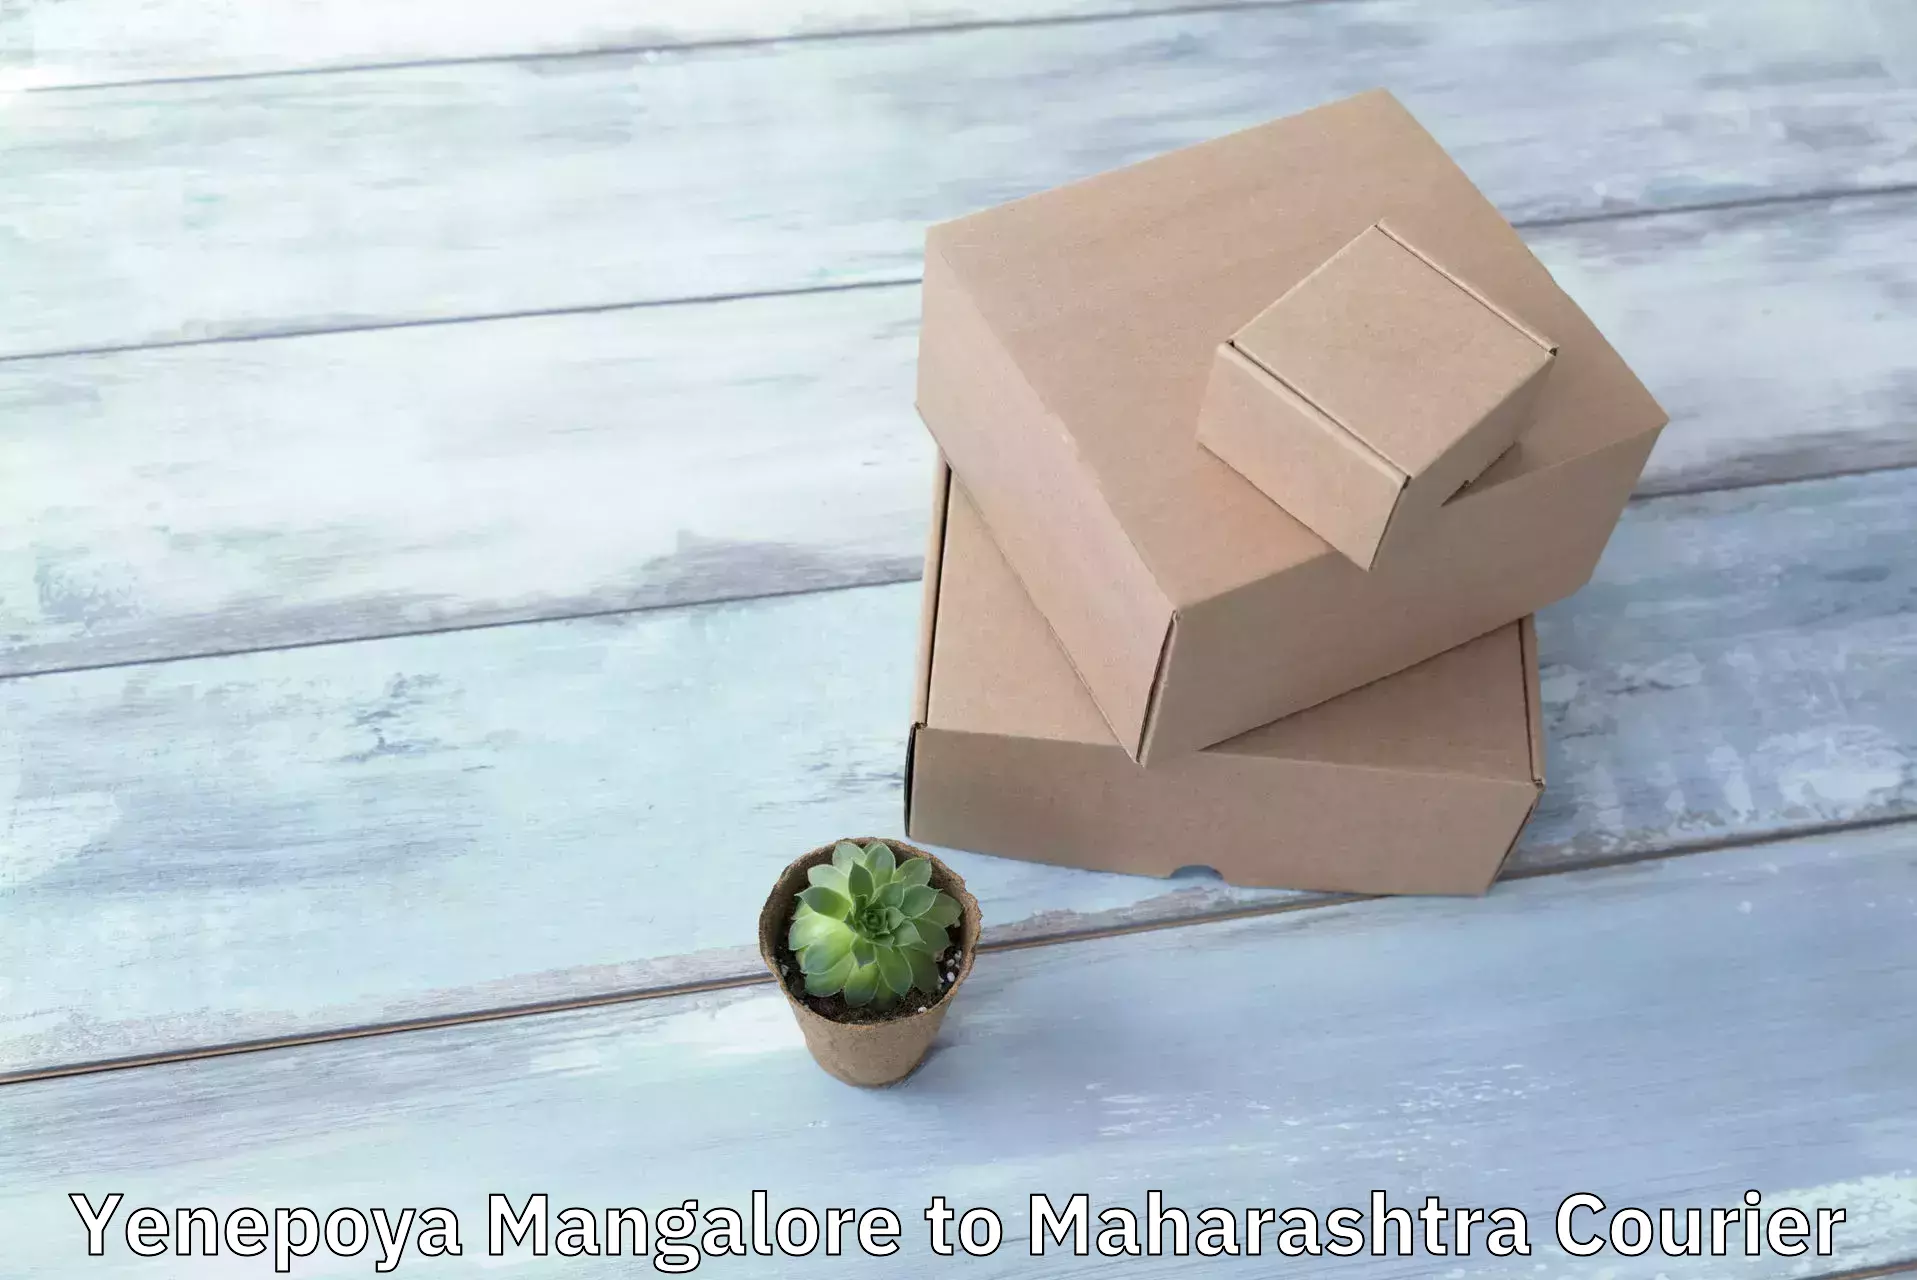 Efficient courier operations Yenepoya Mangalore to Maharashtra